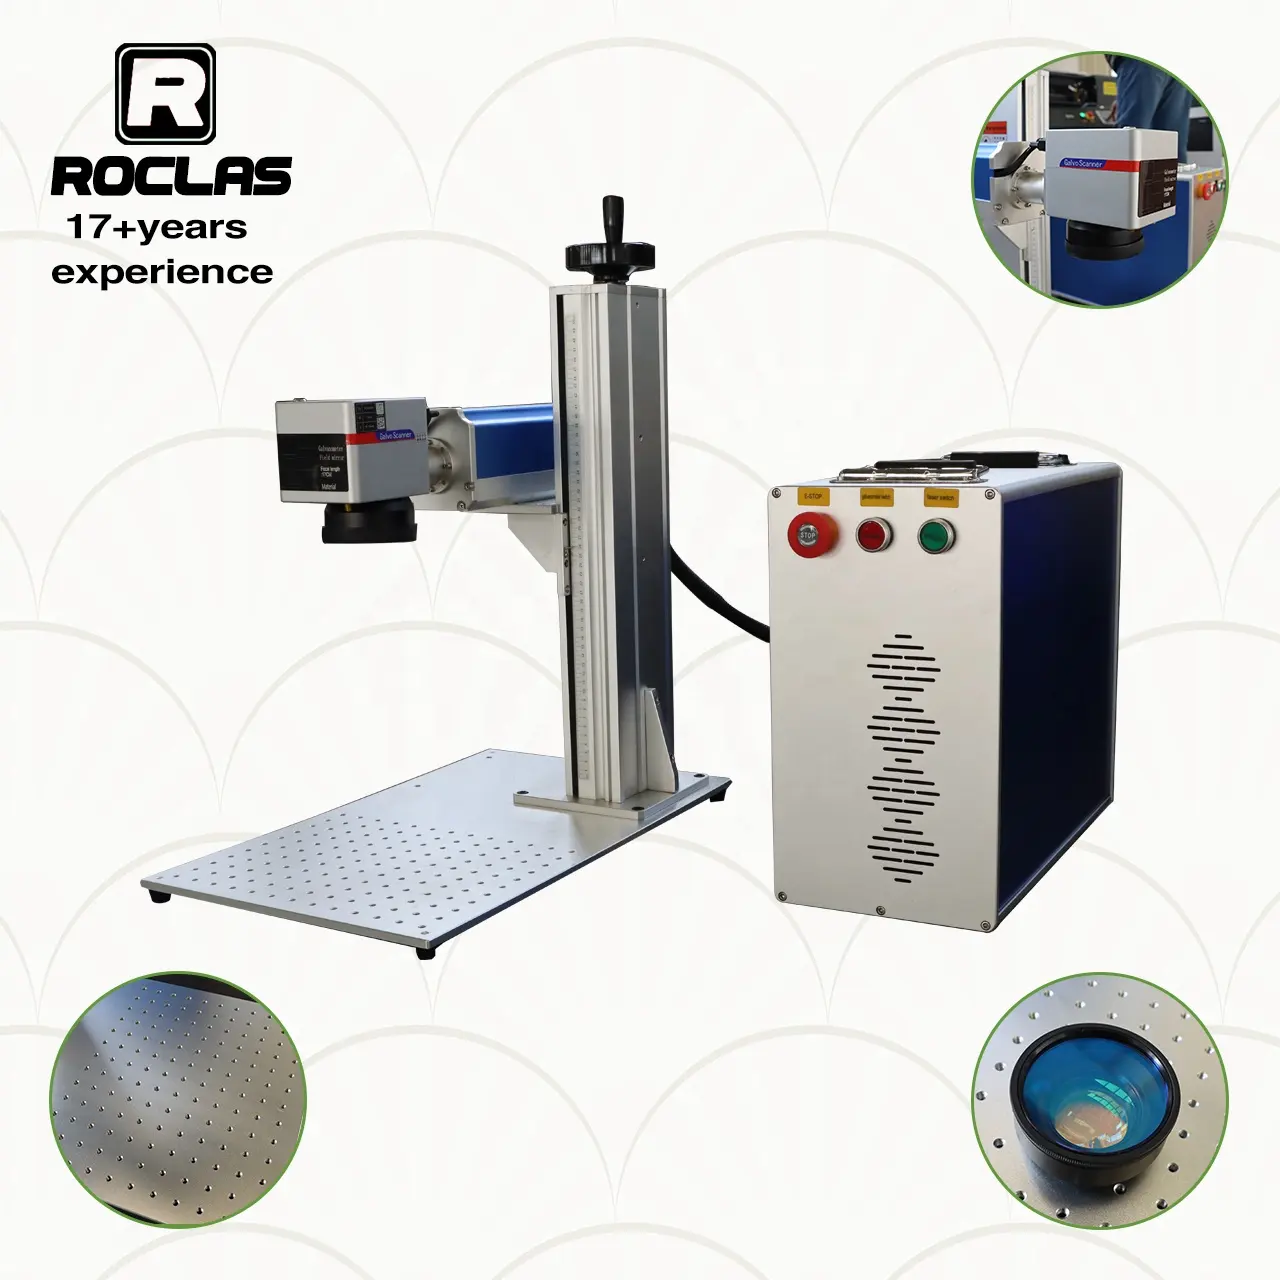 전문 제조 업체 휴대용 분할 금속 섬유 레이저 마킹 기계 20w Roclas